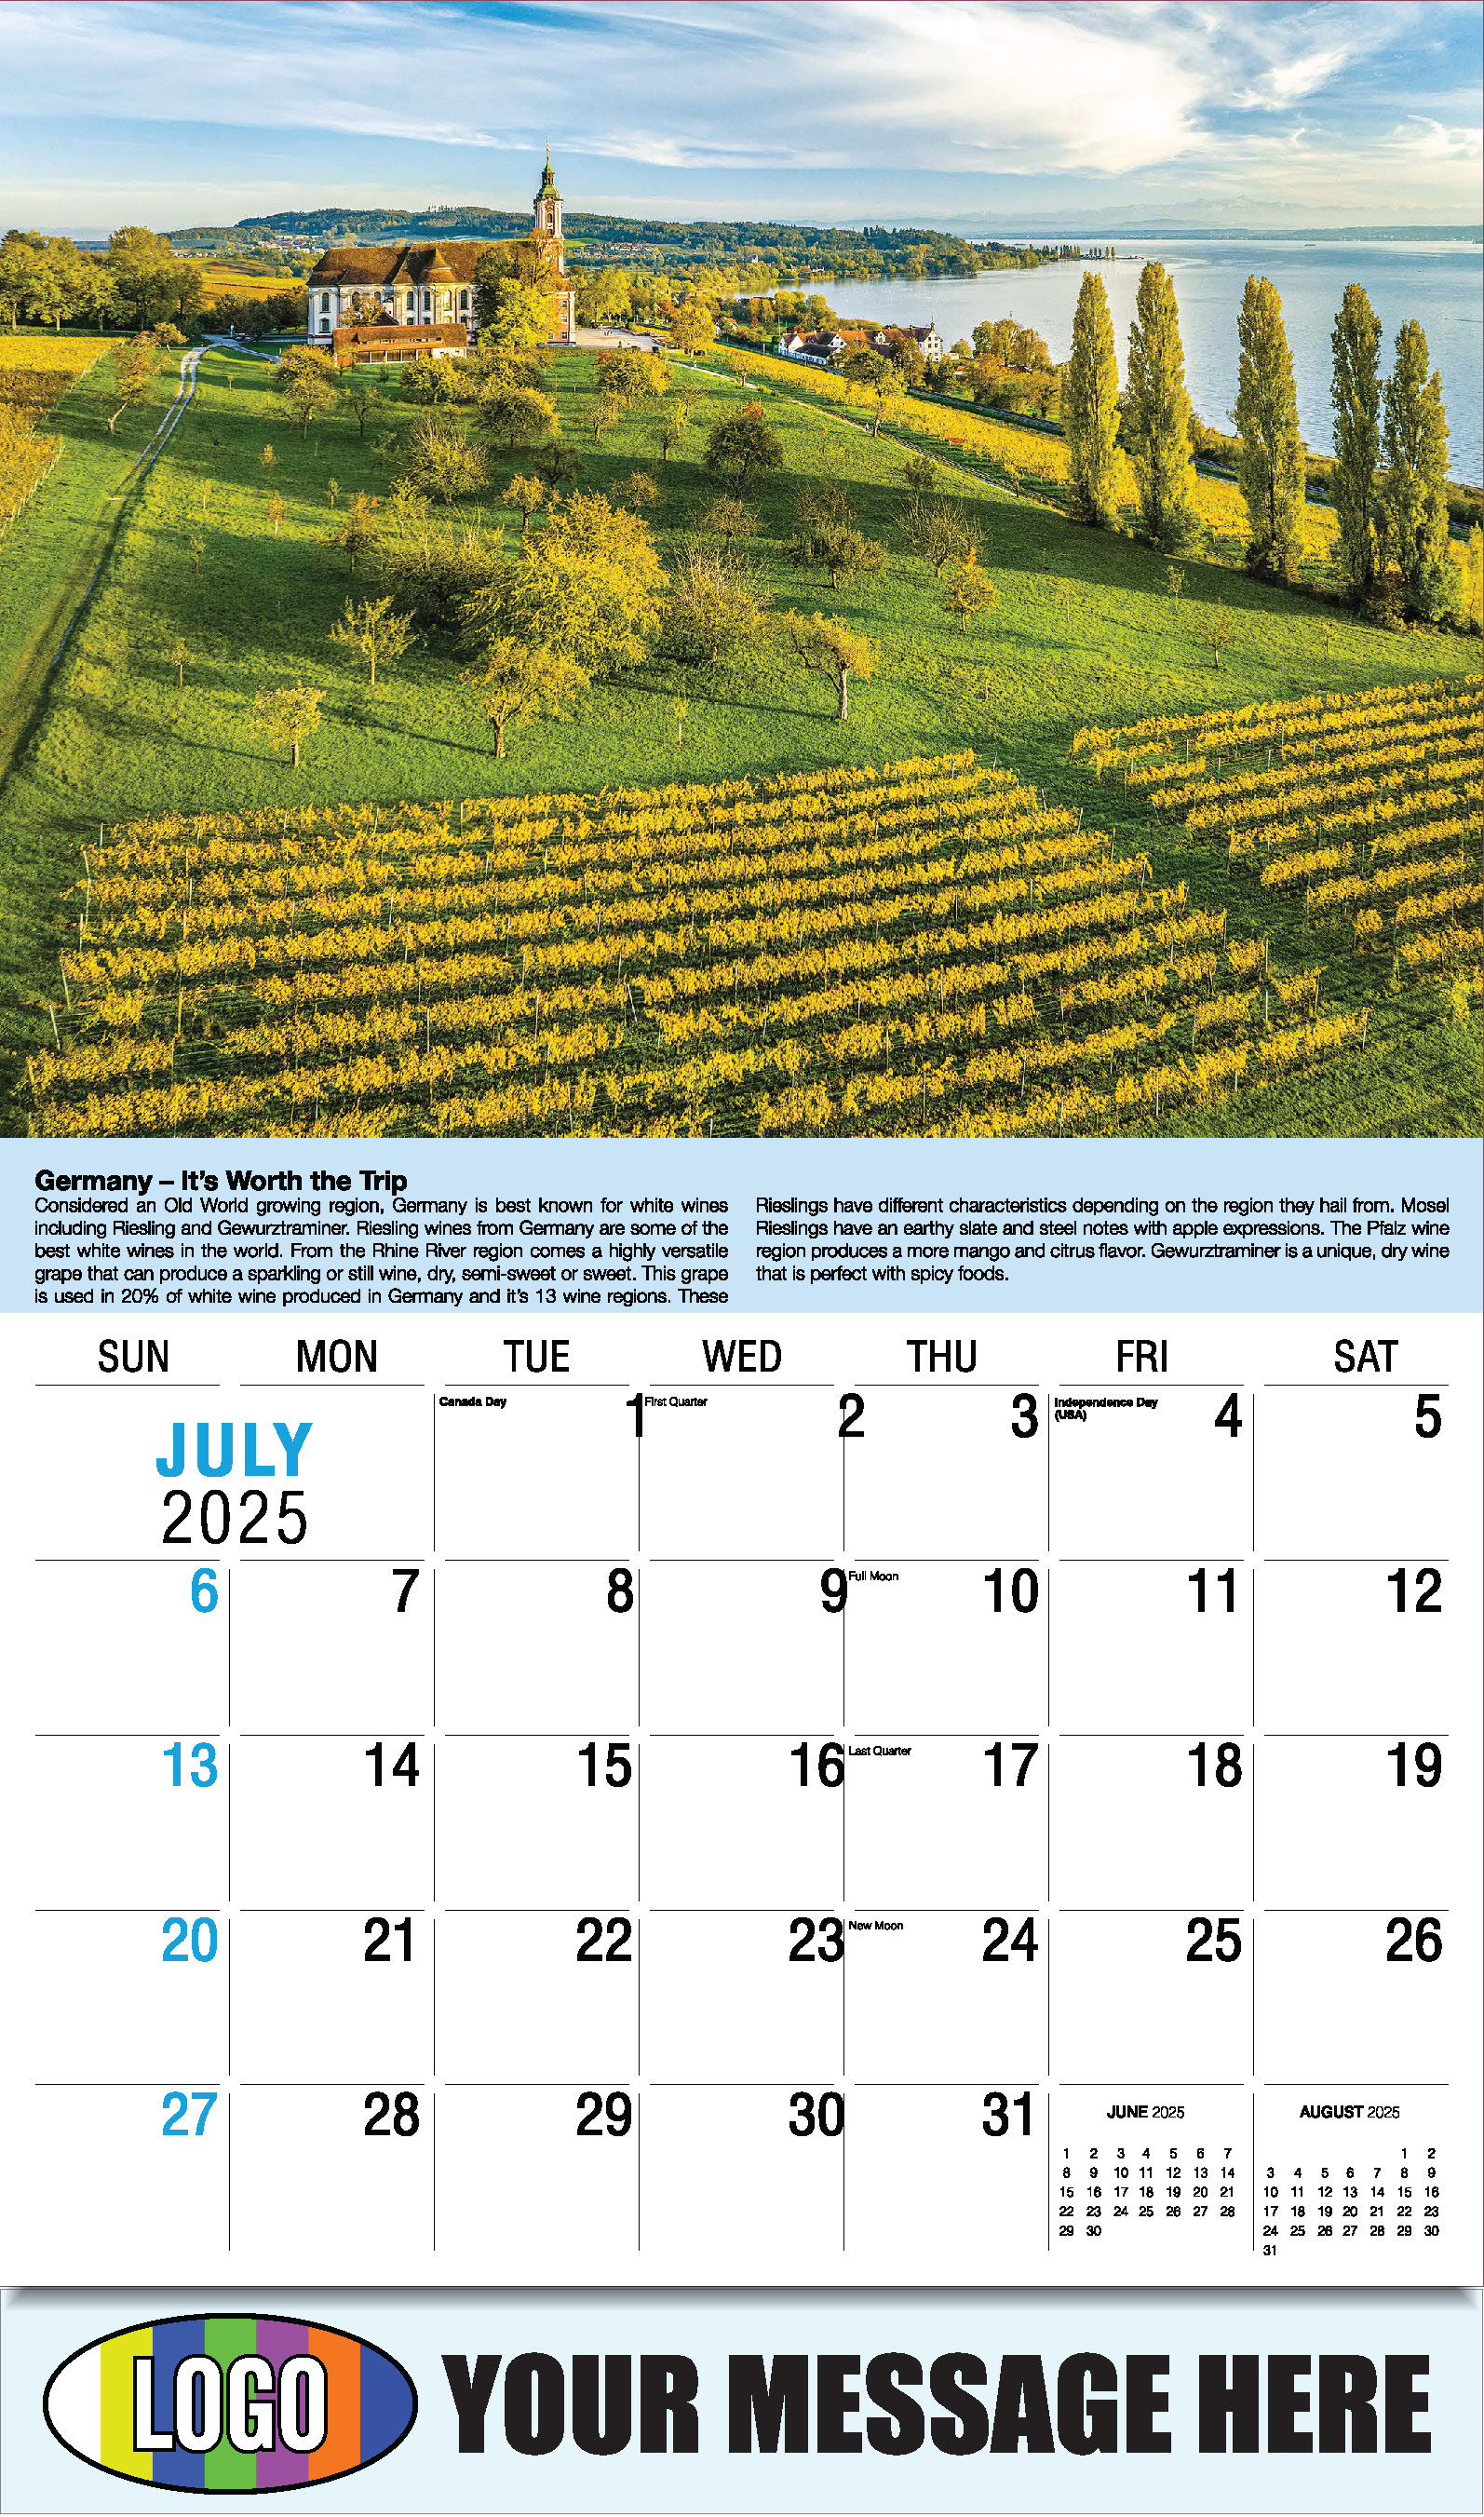 Vintages - Wine Tips 2025 Business Promo Calendar - July